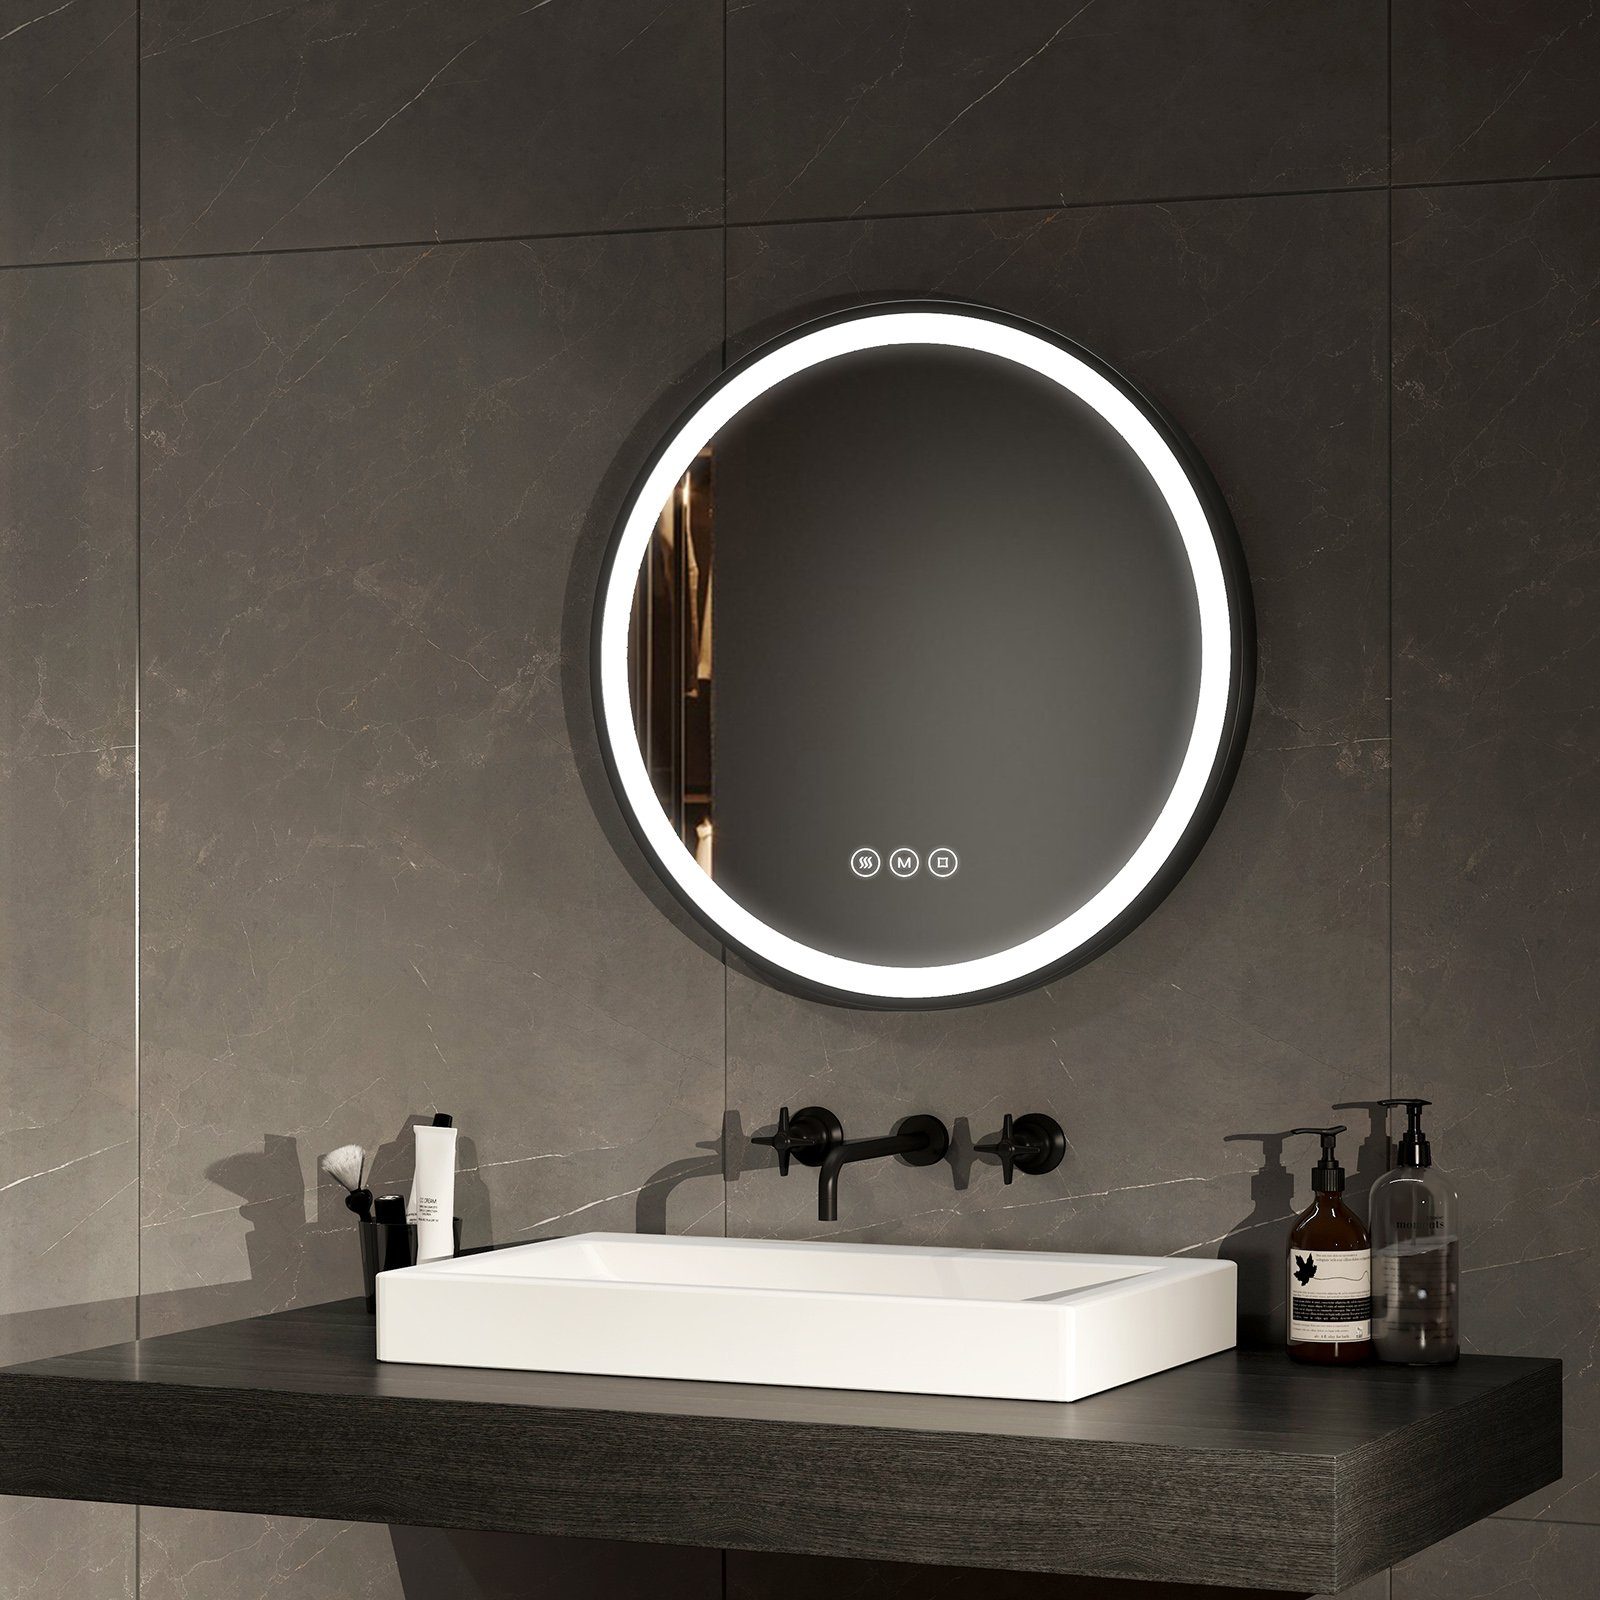 EMKE Badspiegel Antibeschlage Badezimmerspiegel mit schwarz Rahmen (Modell R4, Φ 50-80 cm, Touch Schalter), 3 Lichtfarben Dimmbar, Memory-Funktion, IP44